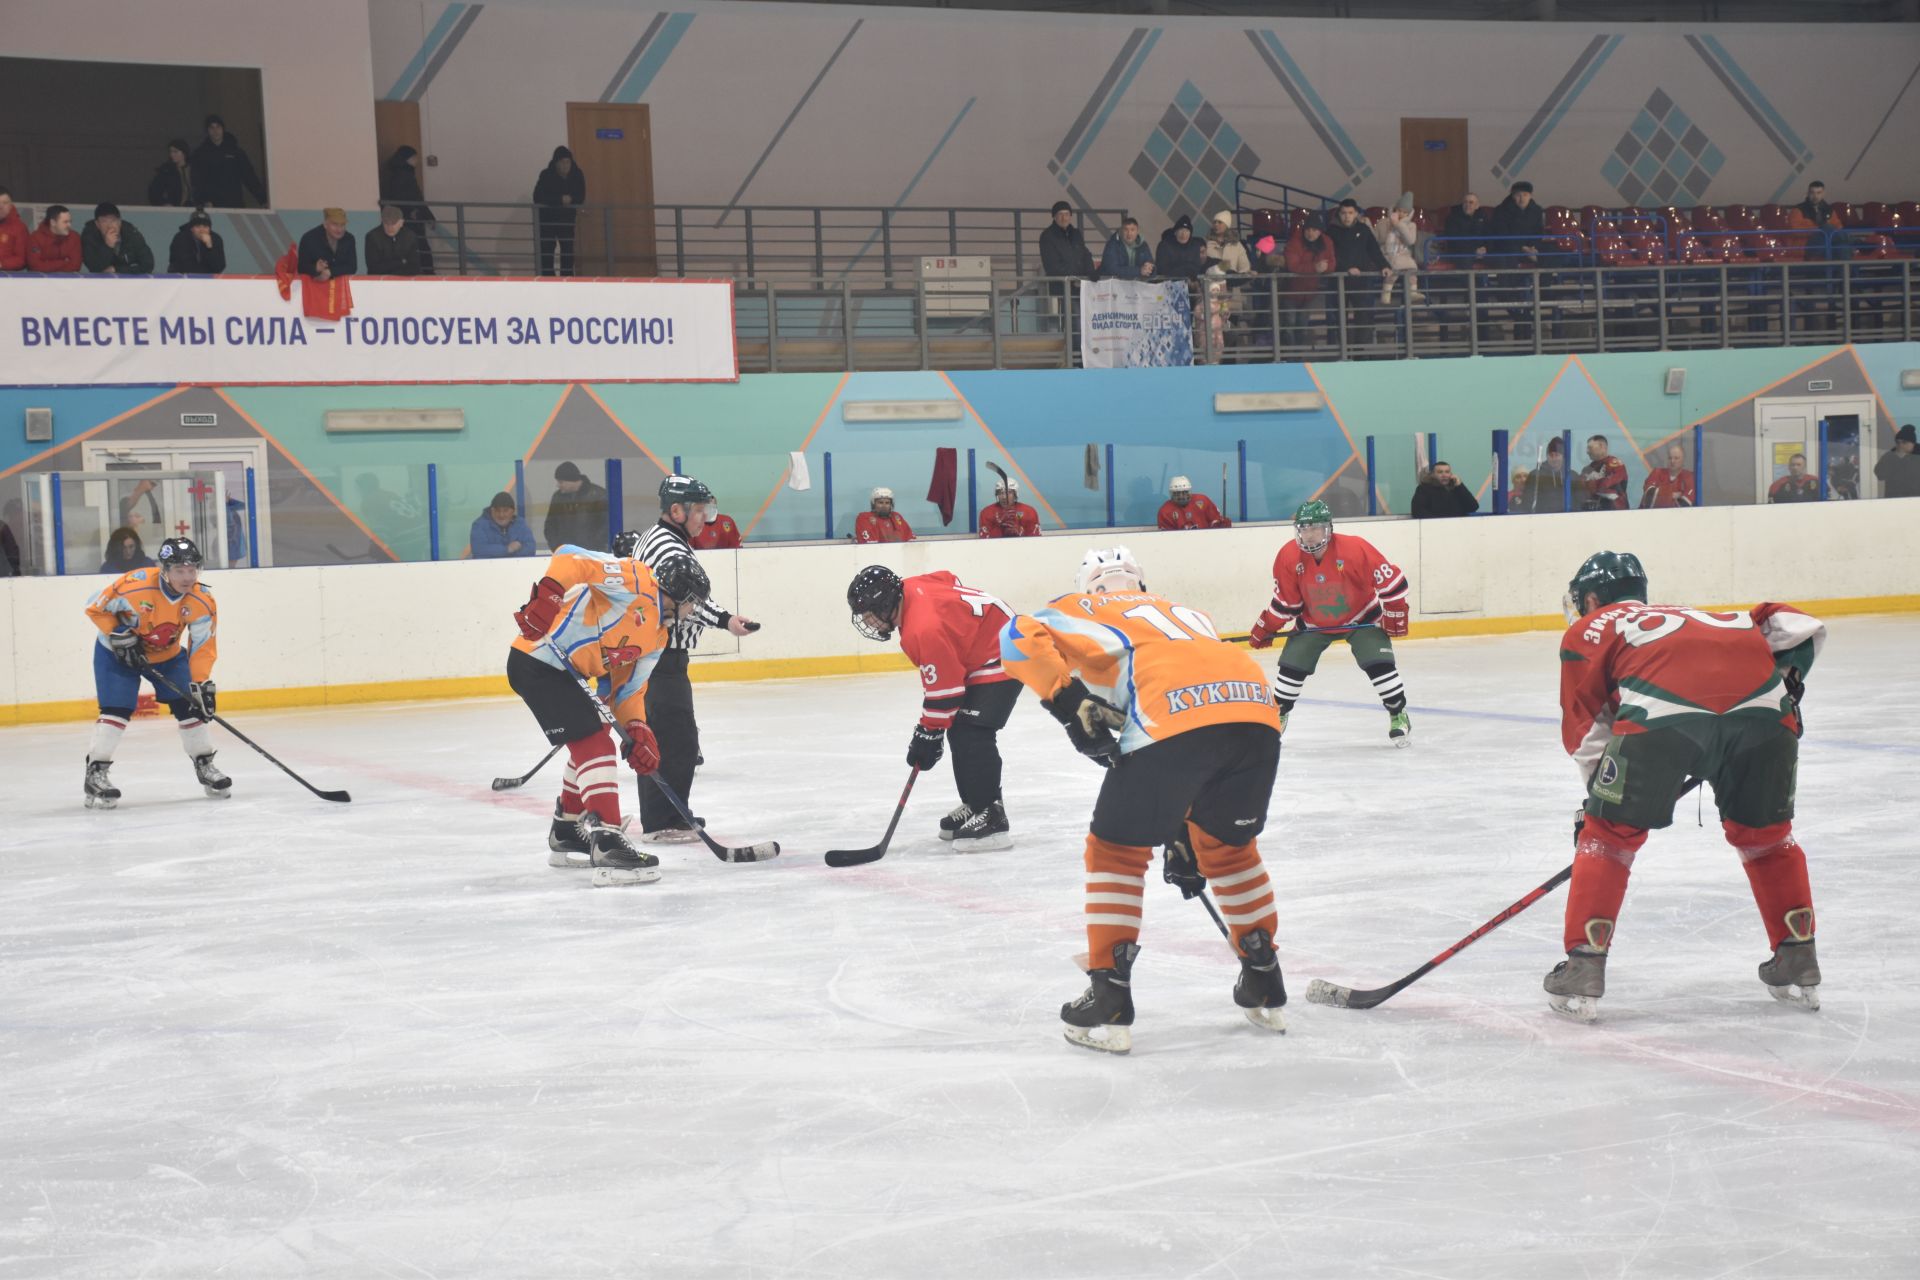 В Кукморе прошел турнир по хоккею памяти Ильмира Кашапова, погибшего в СВО